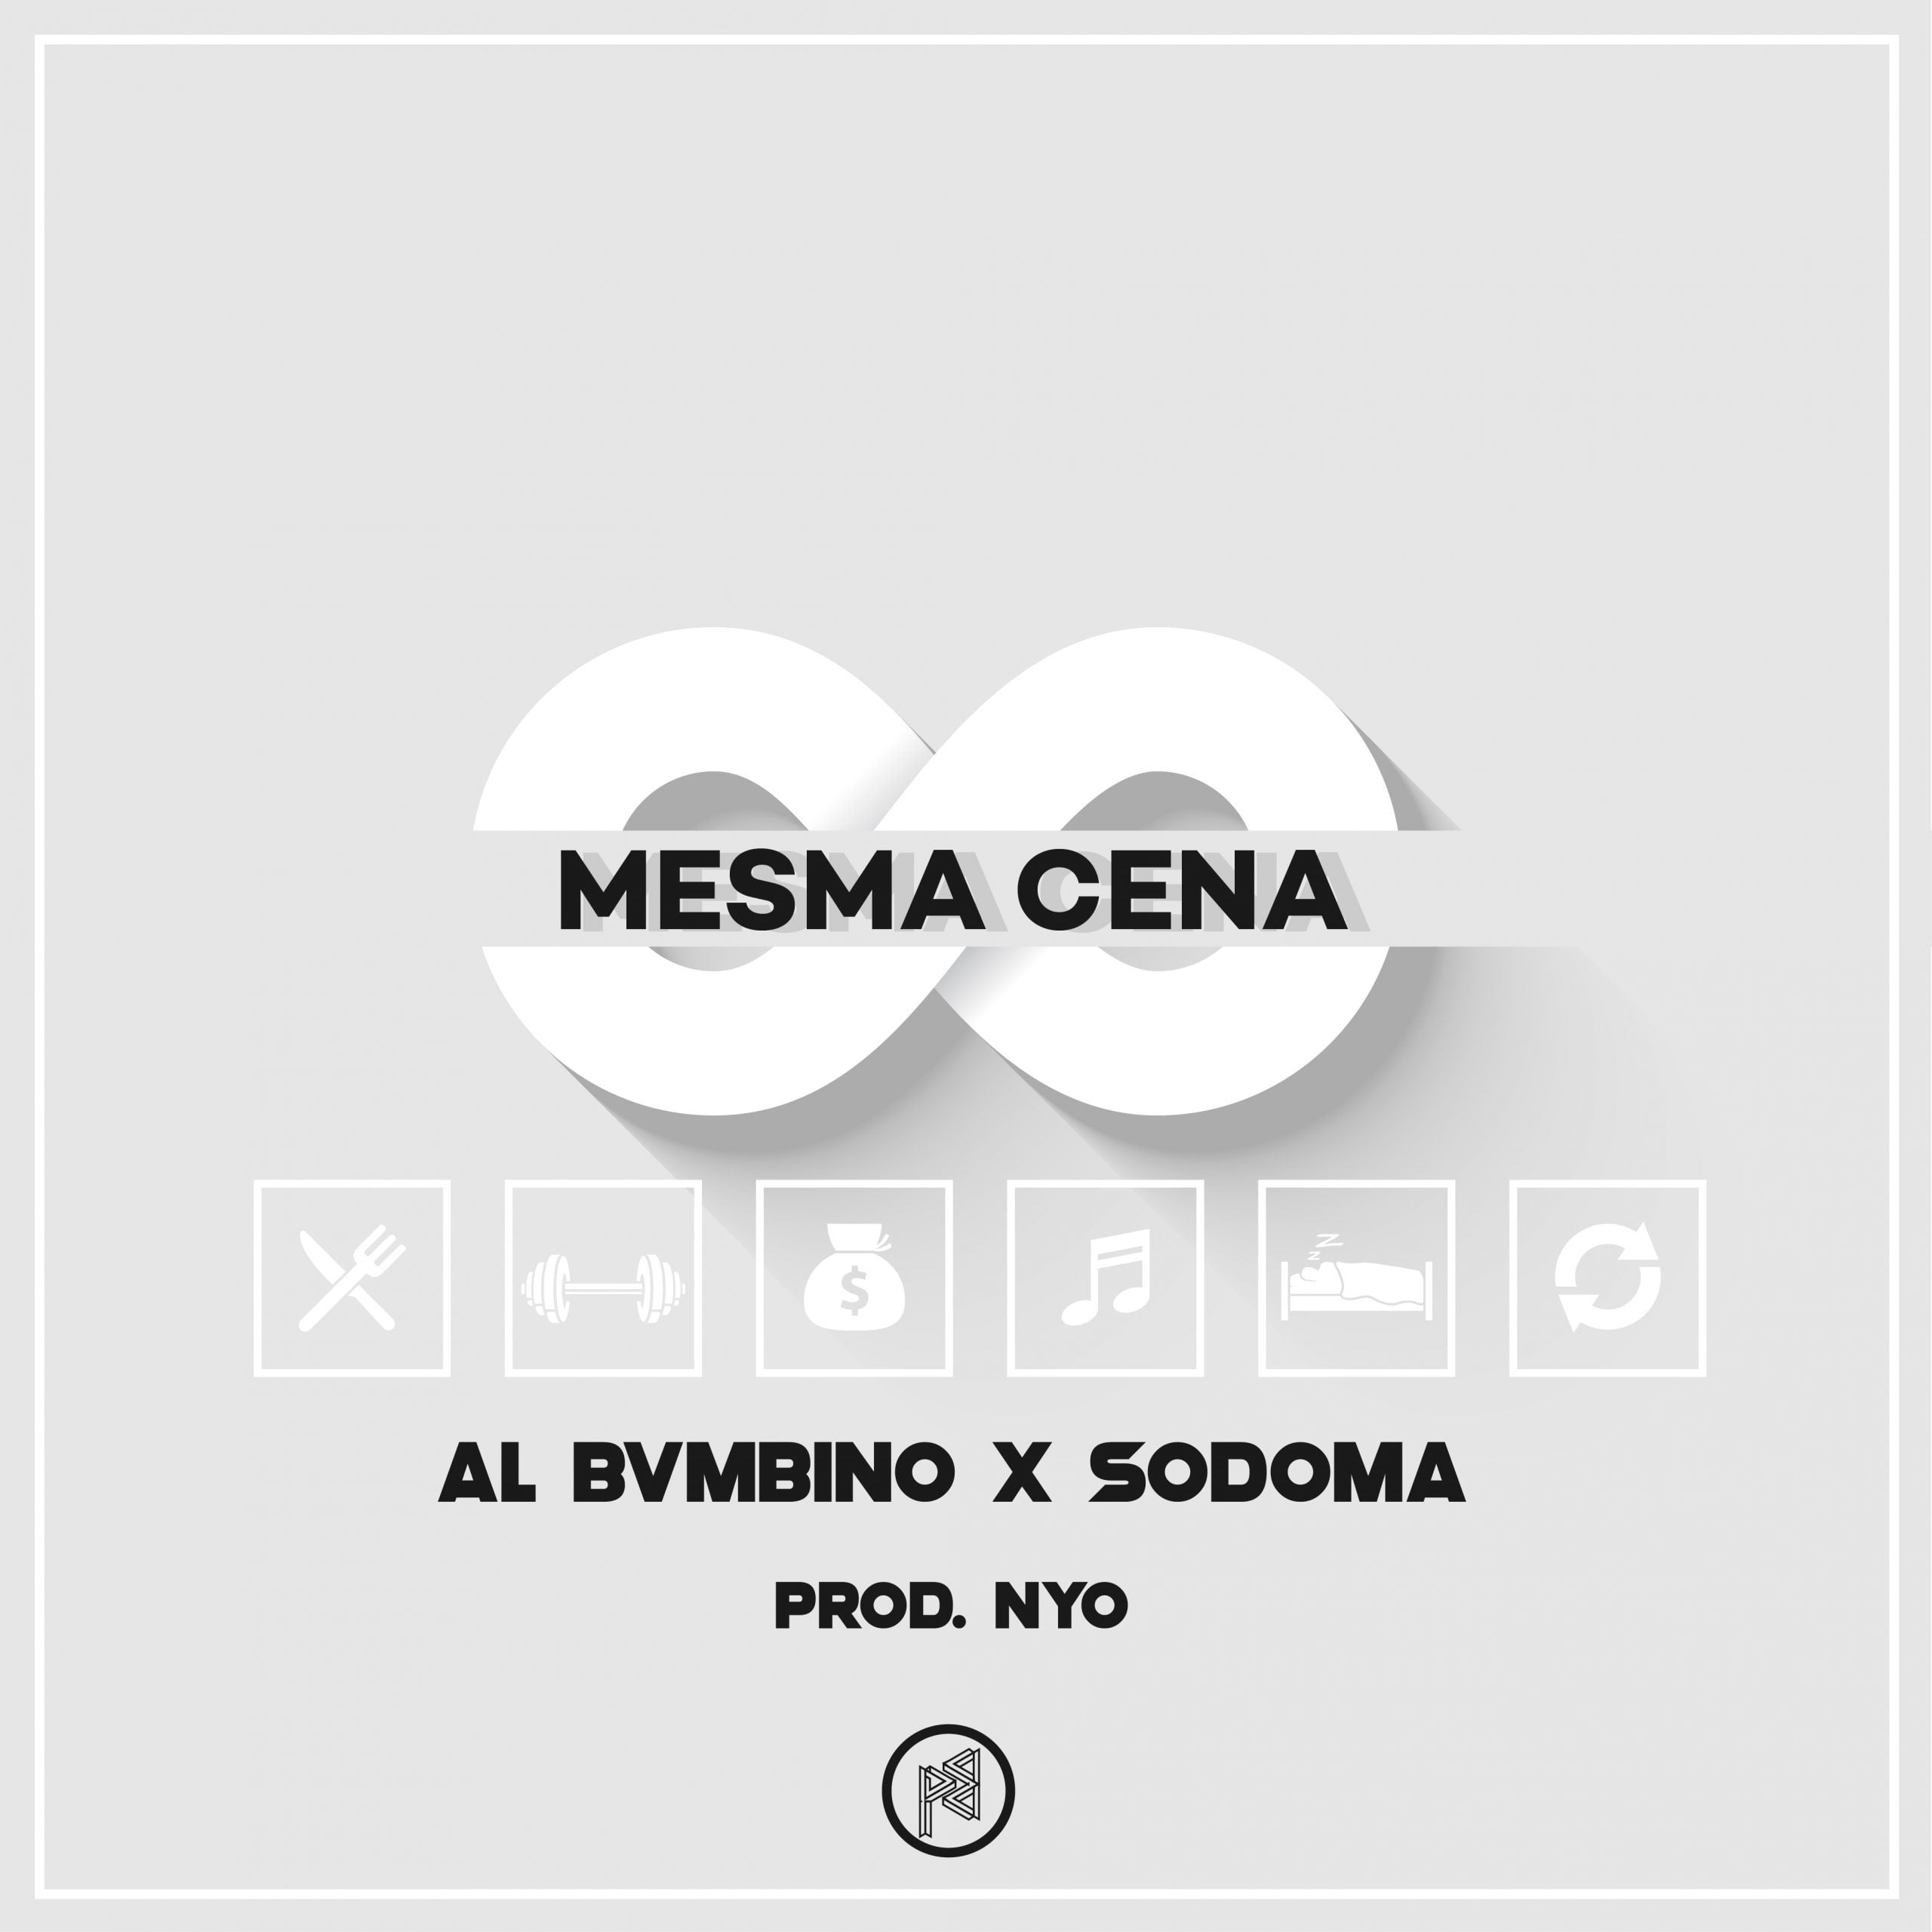 Al Bvmbino x Sodoma - Mesma Cena (Prod. Nyo)